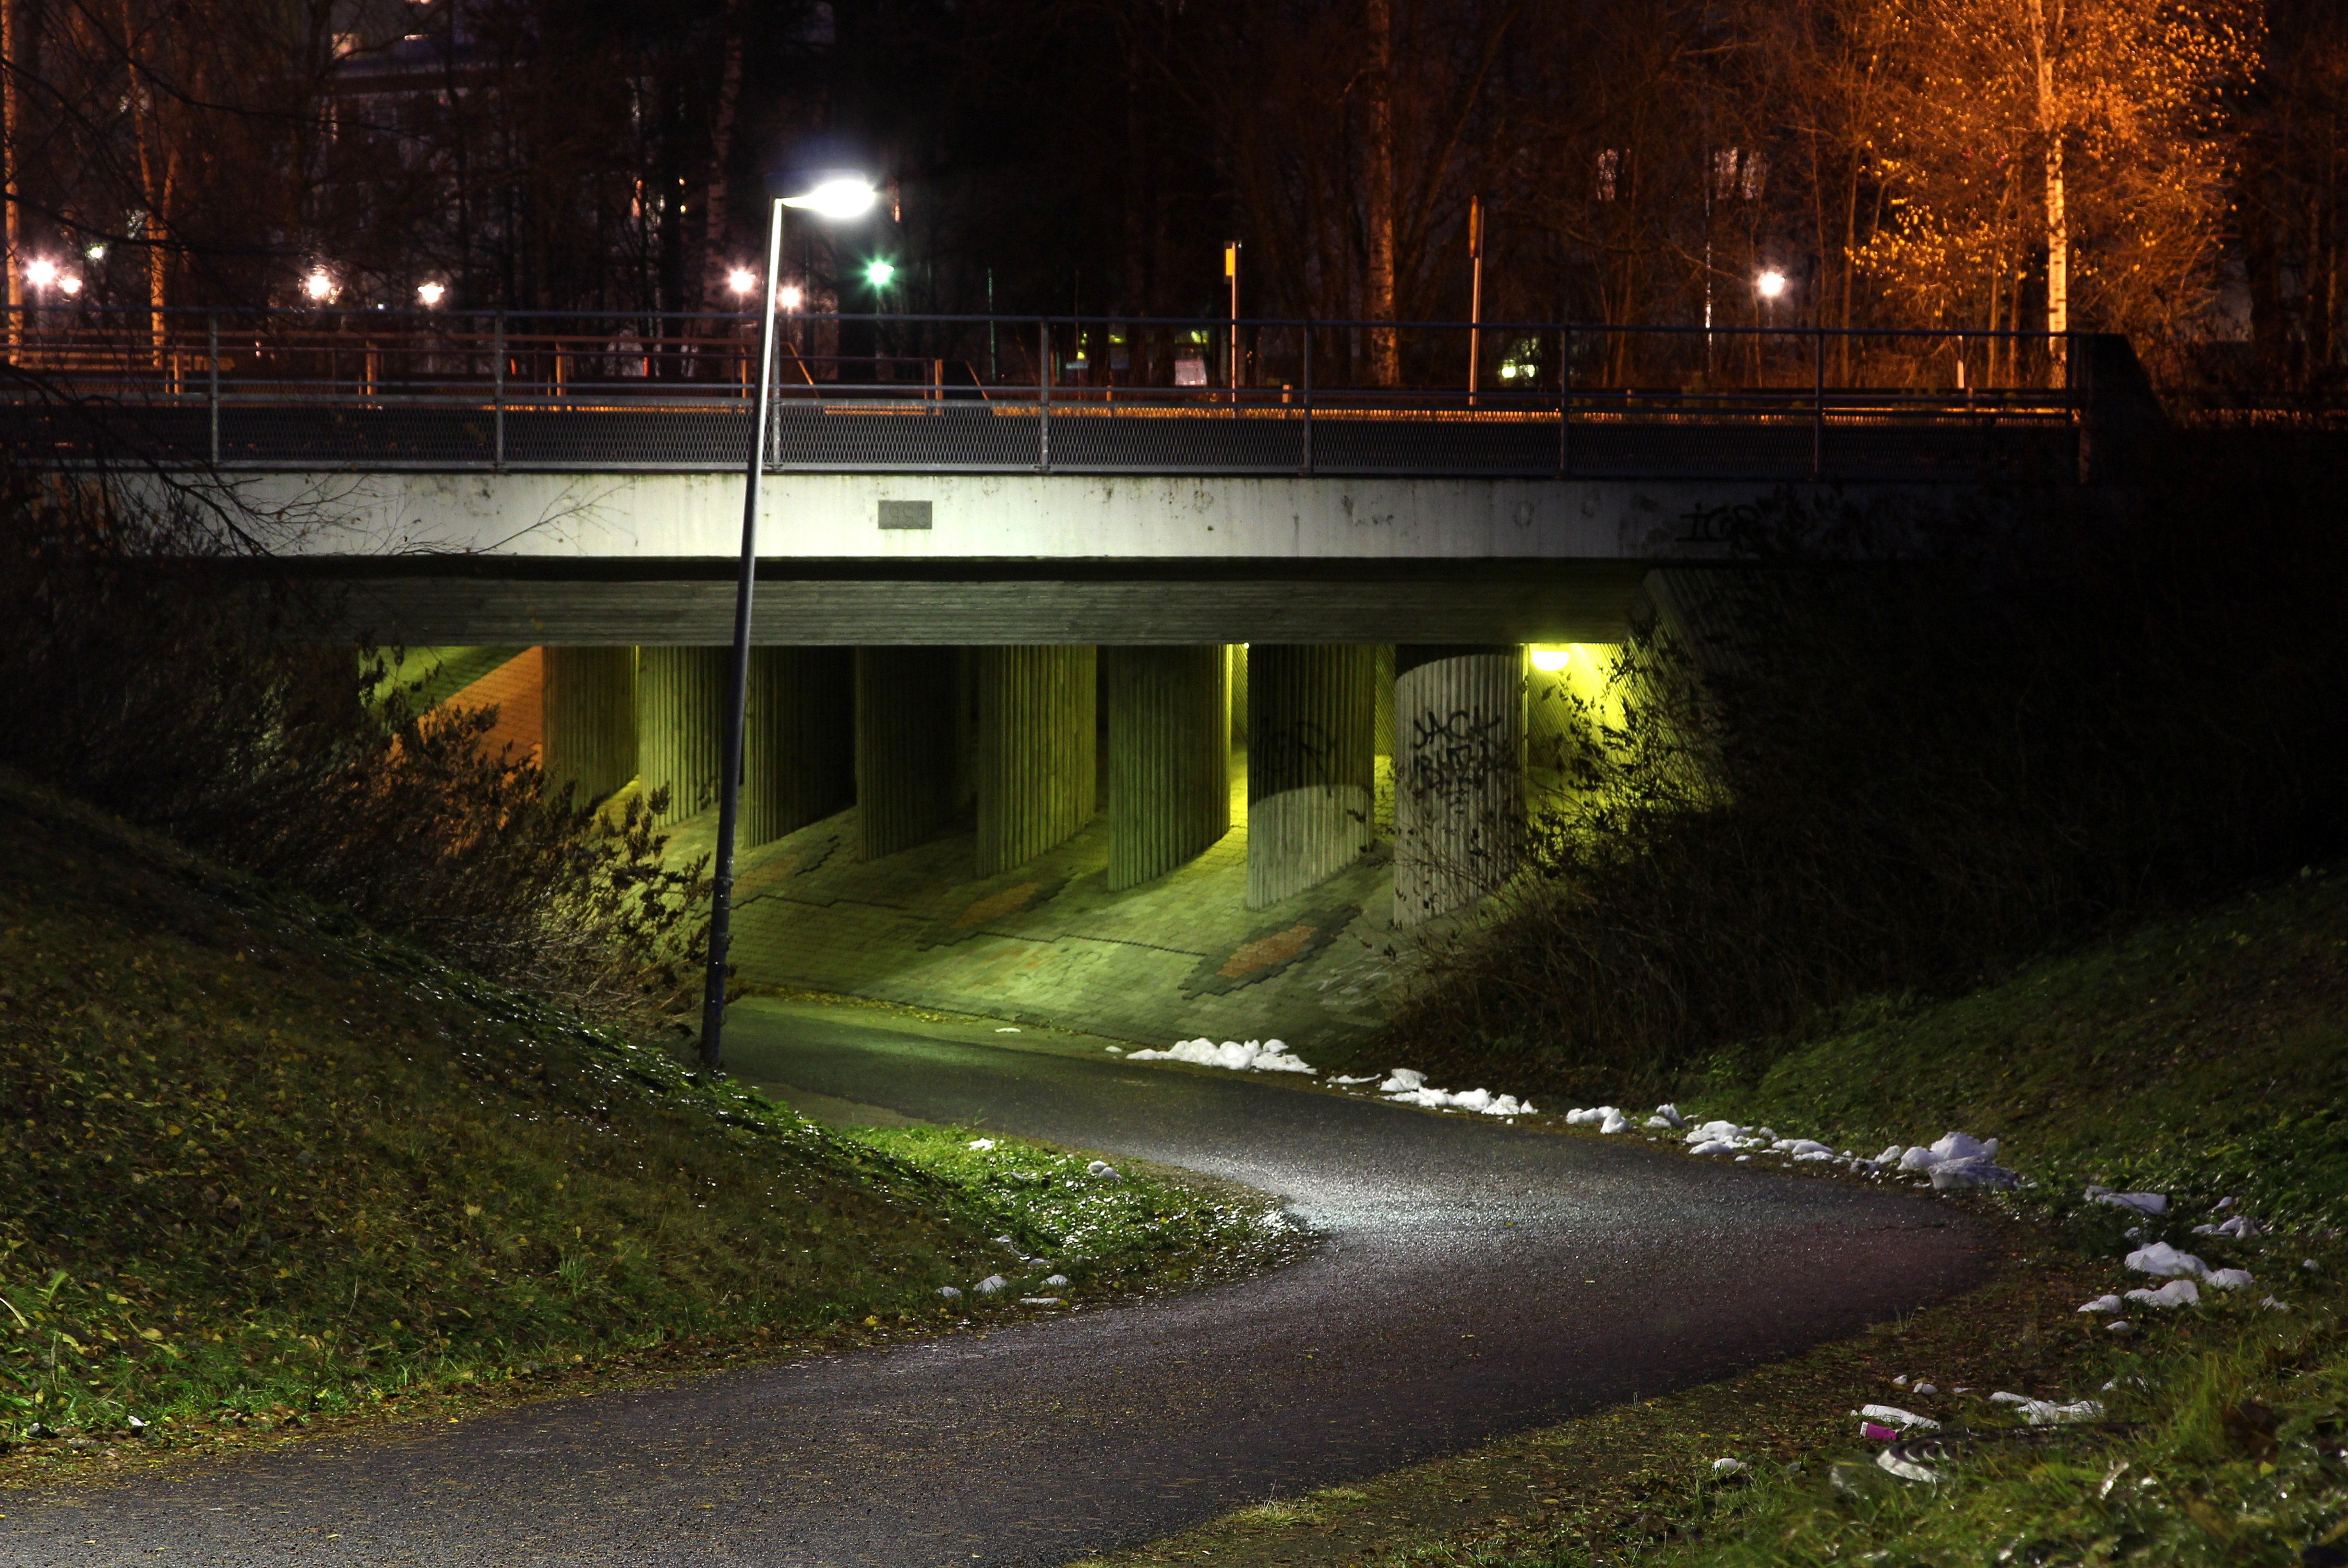 File:Underpass Välivainio Oulu 20131109.JPG - Wikimedia Commons